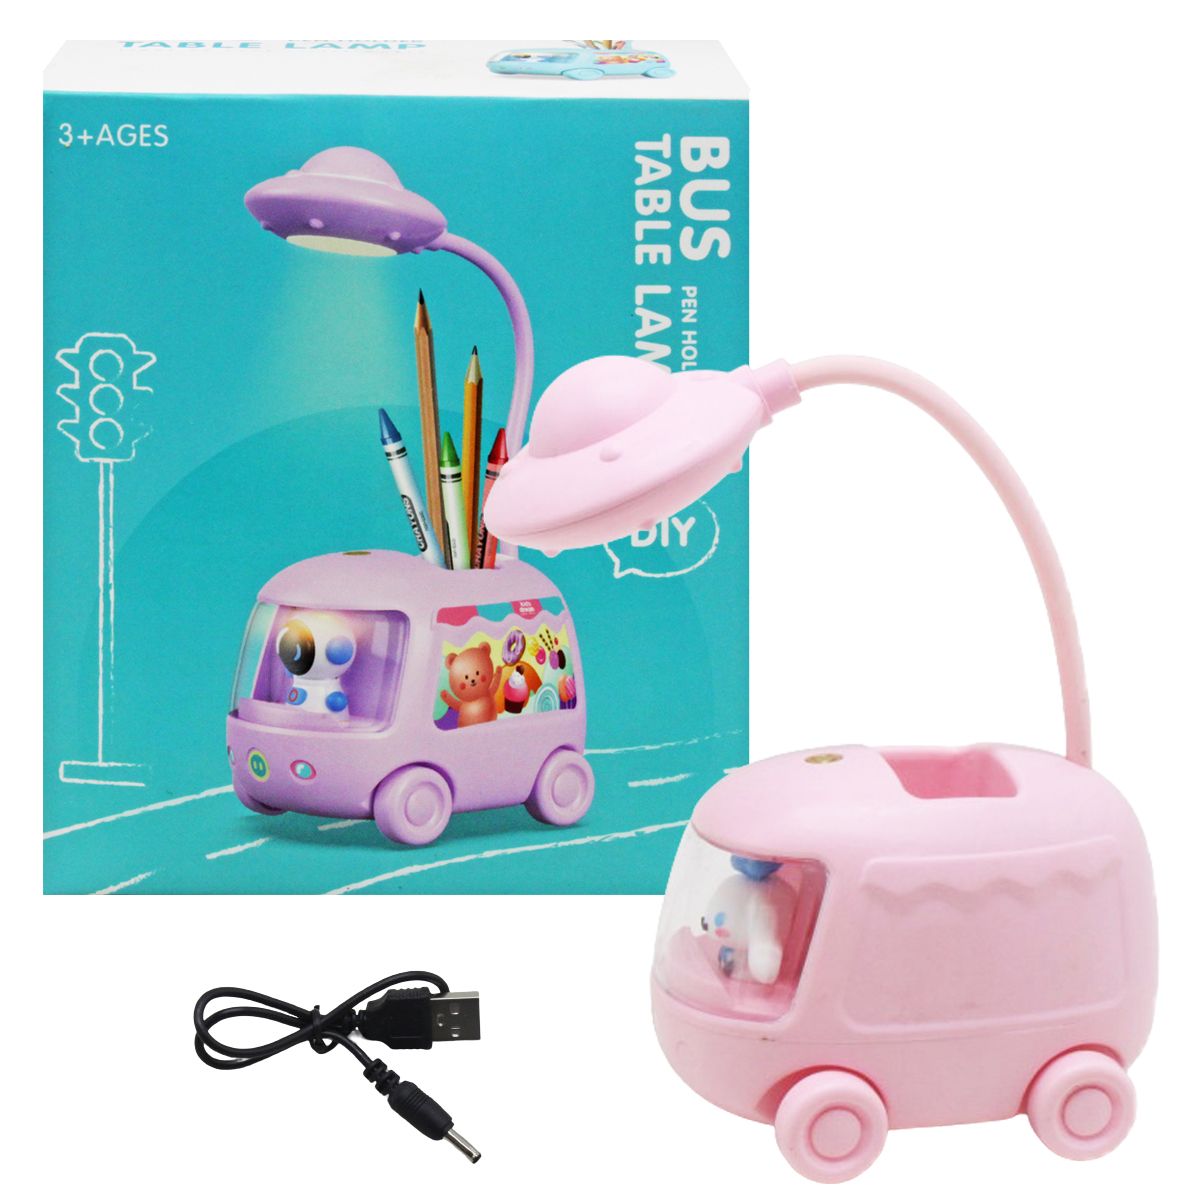 Дитяча настільна лампа "Bus", рожева